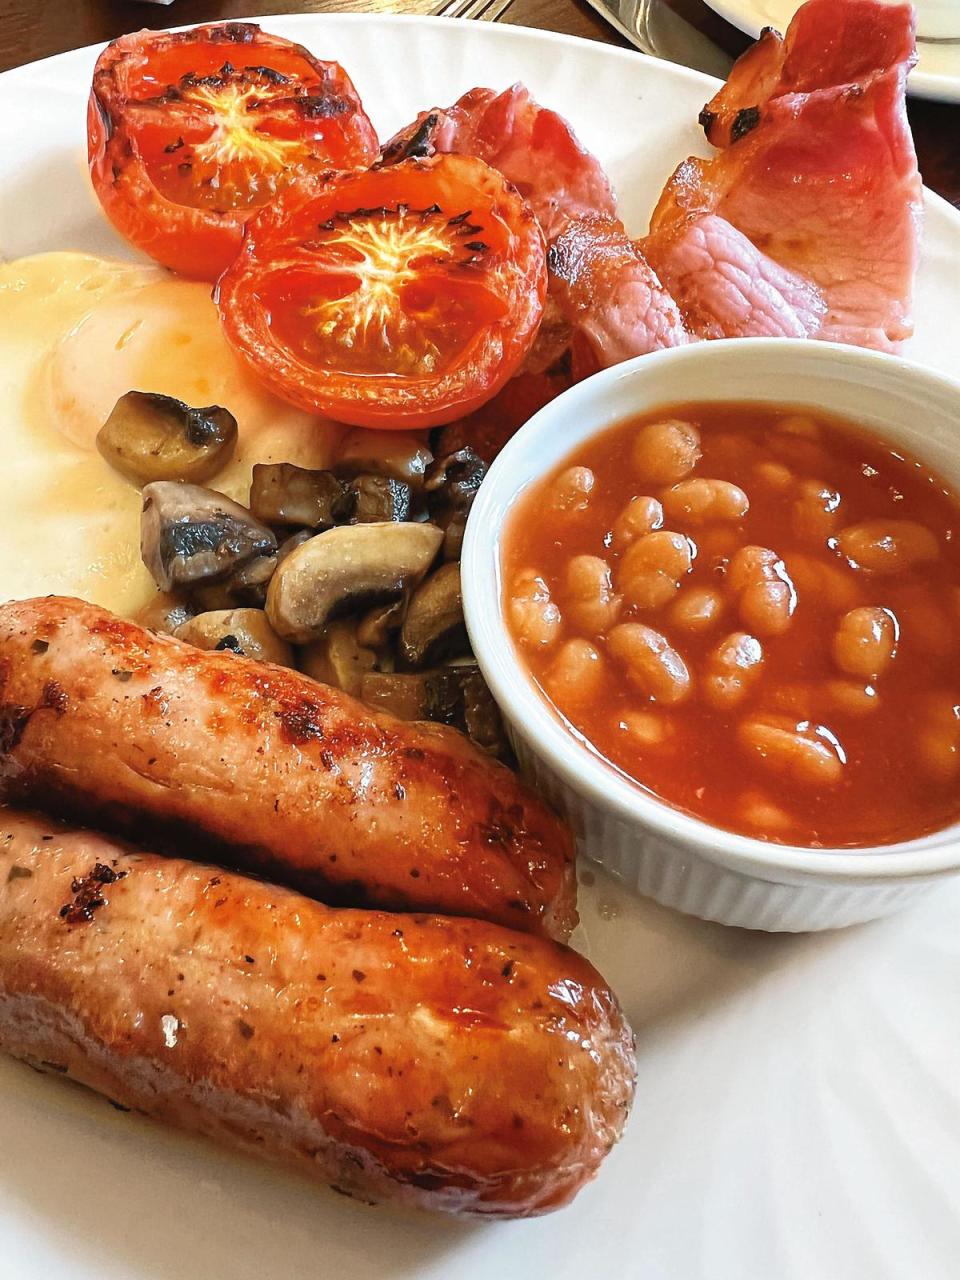 蛋、臘腸、蘑菇、培根、番茄、豆子，加上吐司，即是標準的英式早餐，逛酒廠前一定要先吃飽。